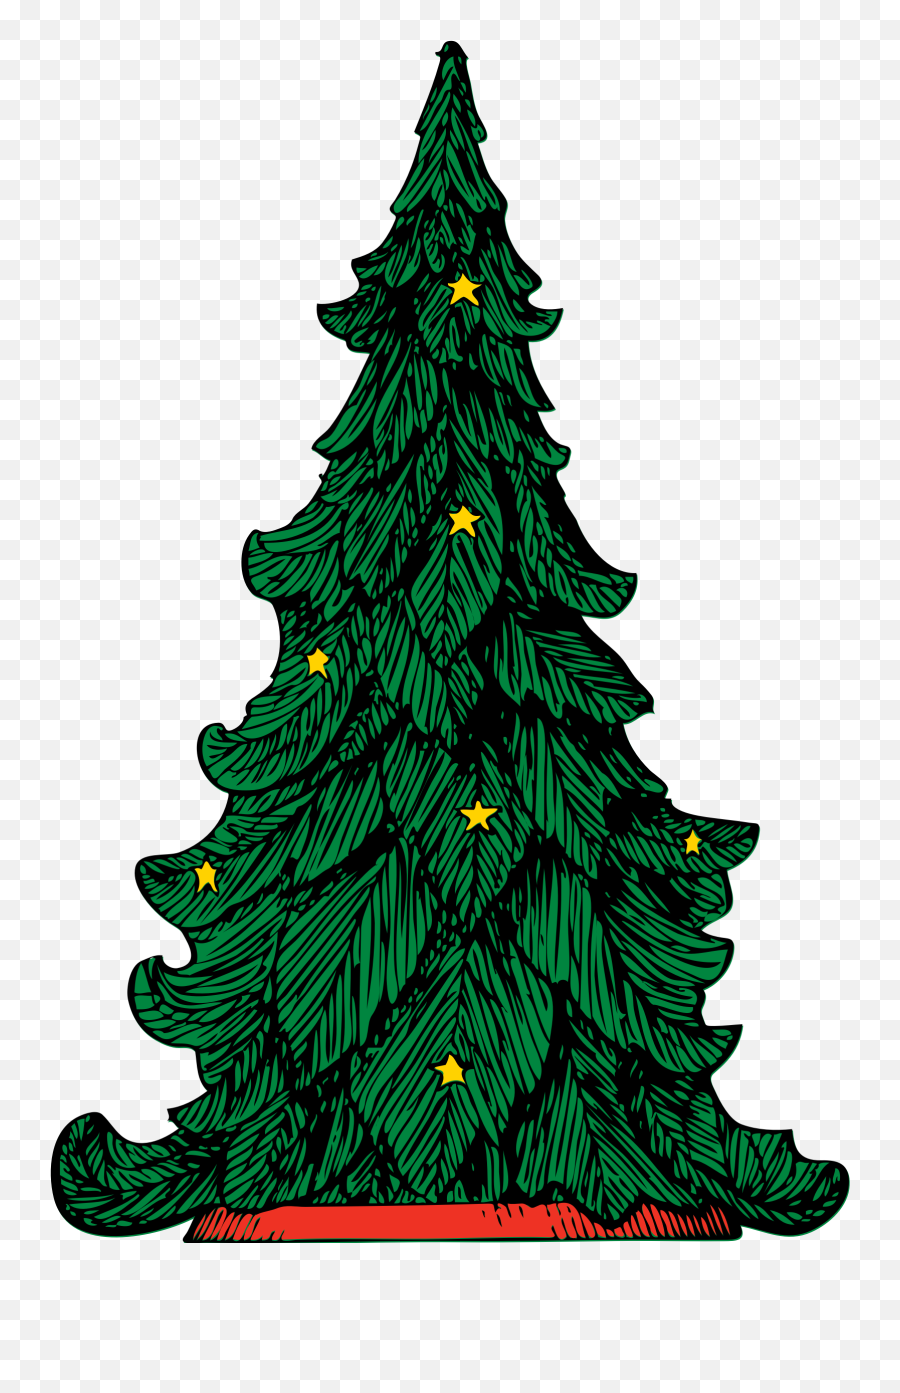 Leaves Clipart Christmas Tree Leaves Christmas Tree - Christmas Tree Illustration Emoji,Pine Branch Emoji